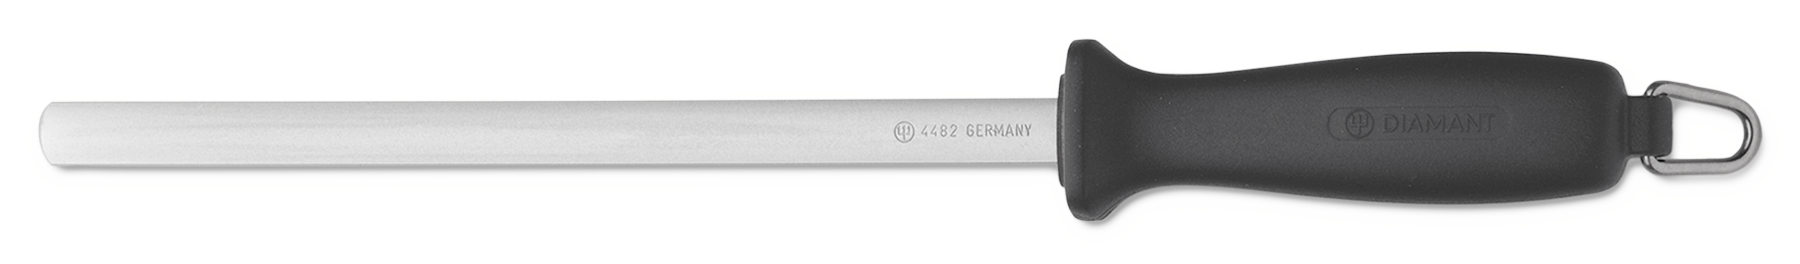 Diamant-Schärfstab 23cm fein Wetzstahl für optimal geschärfte Messer. 